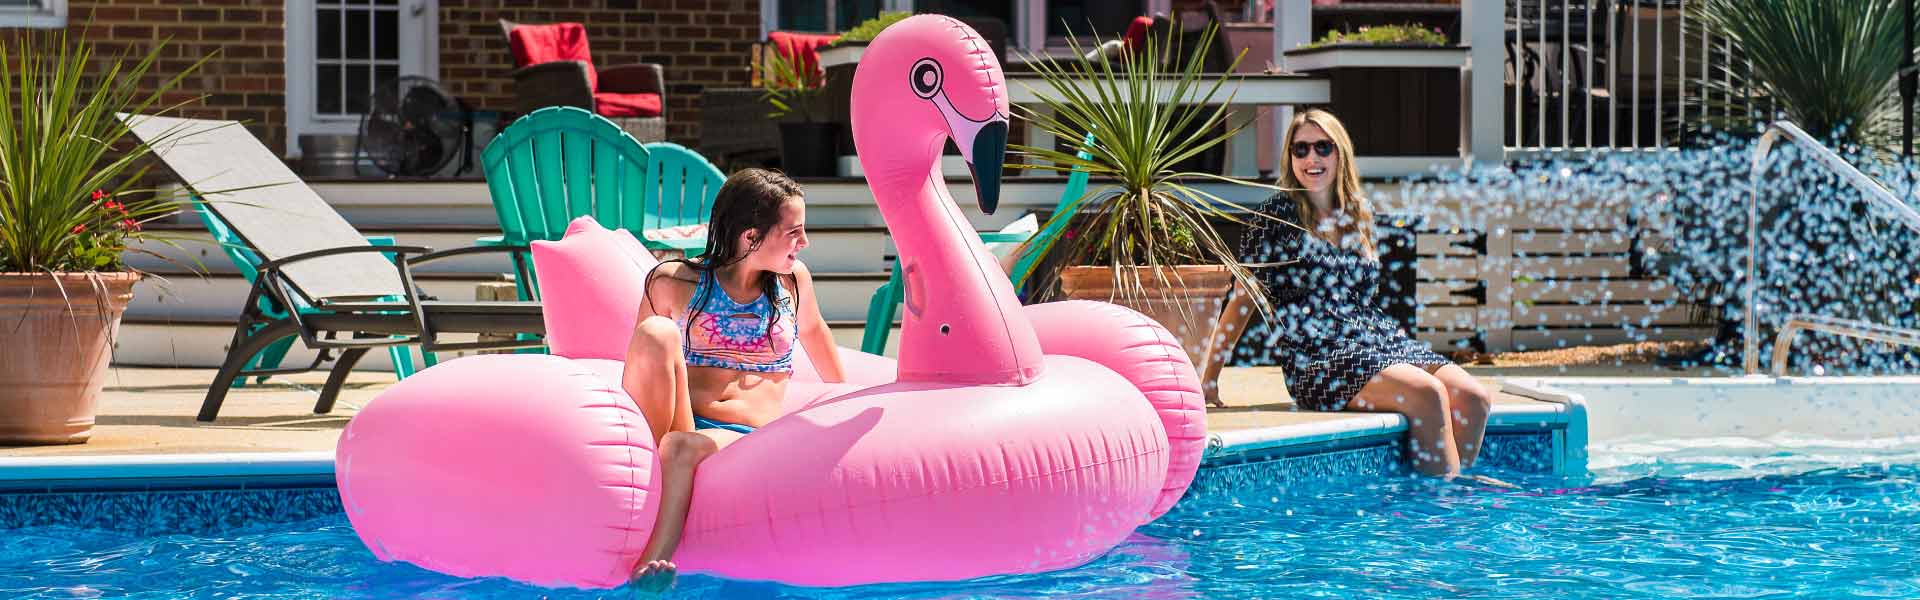 Little girl on flamingo floatie in a clean pool